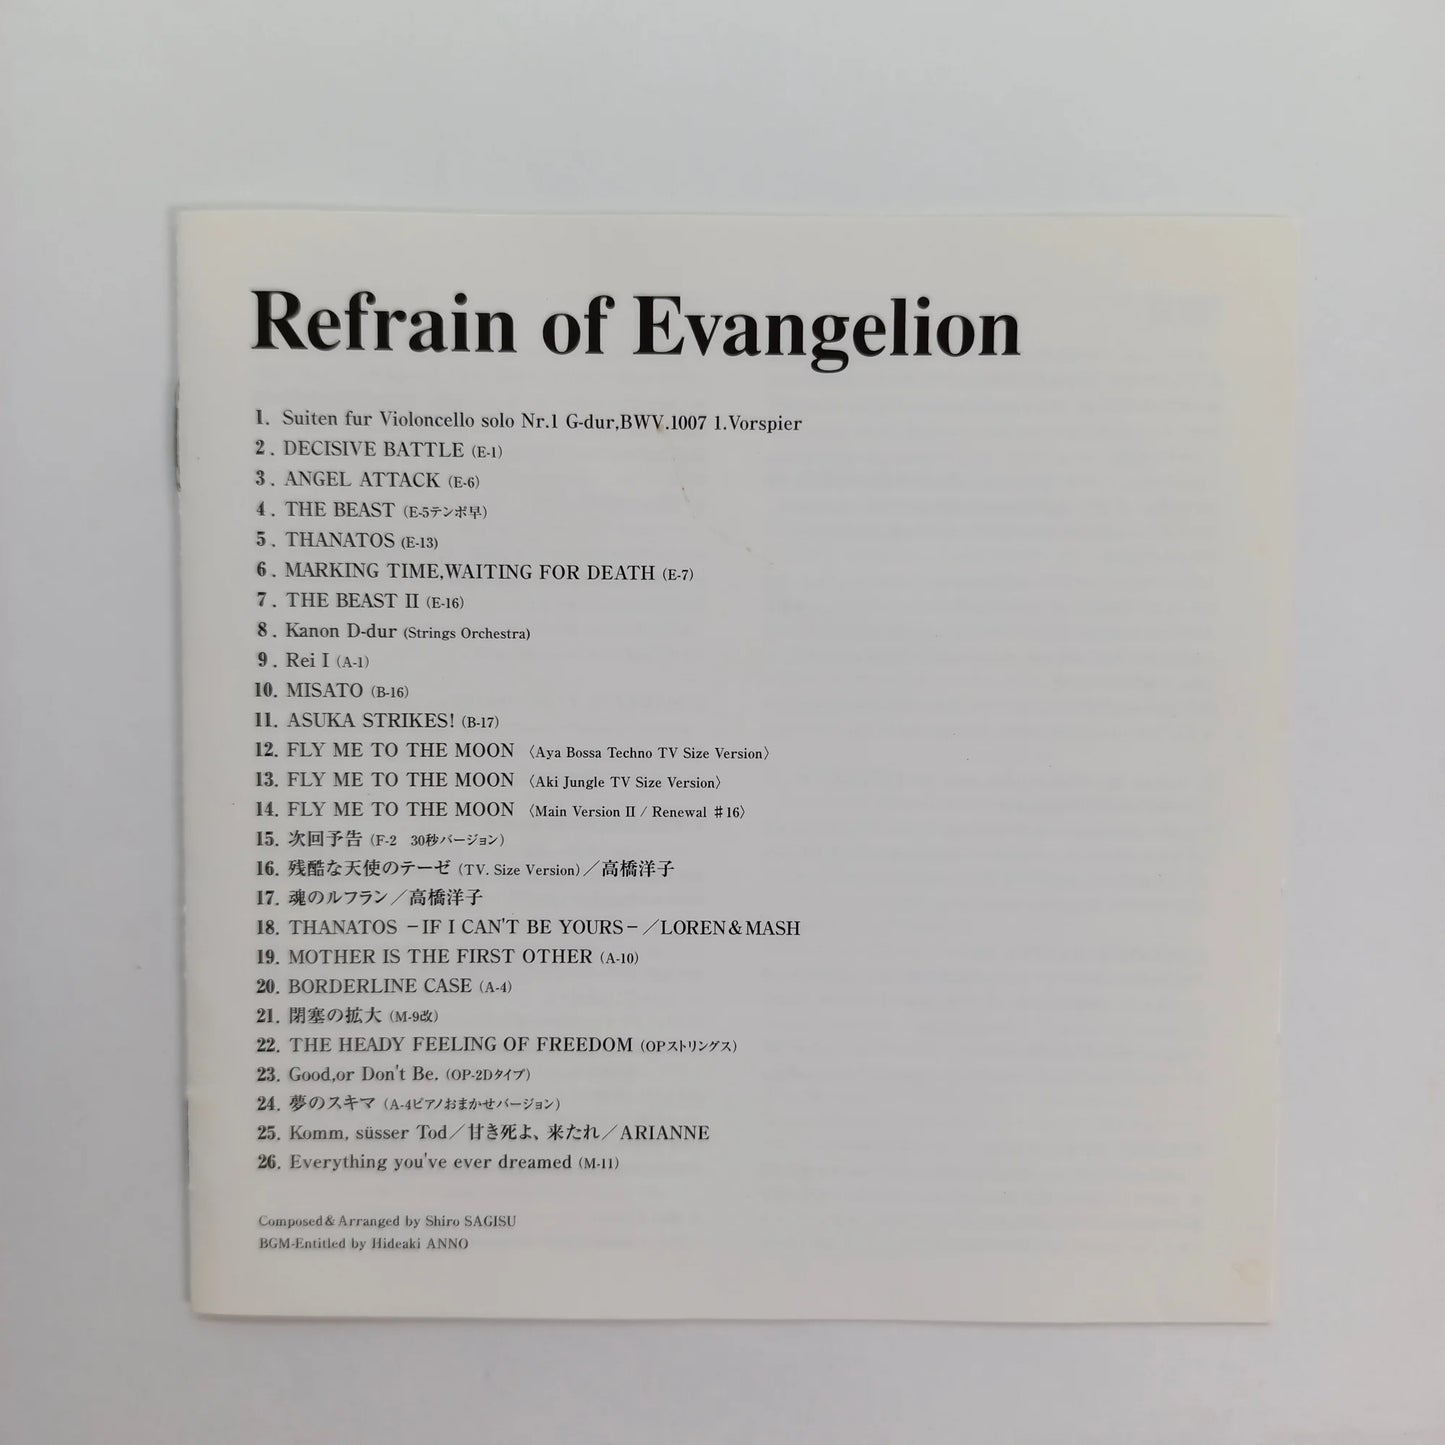 Refrain of Evangelion